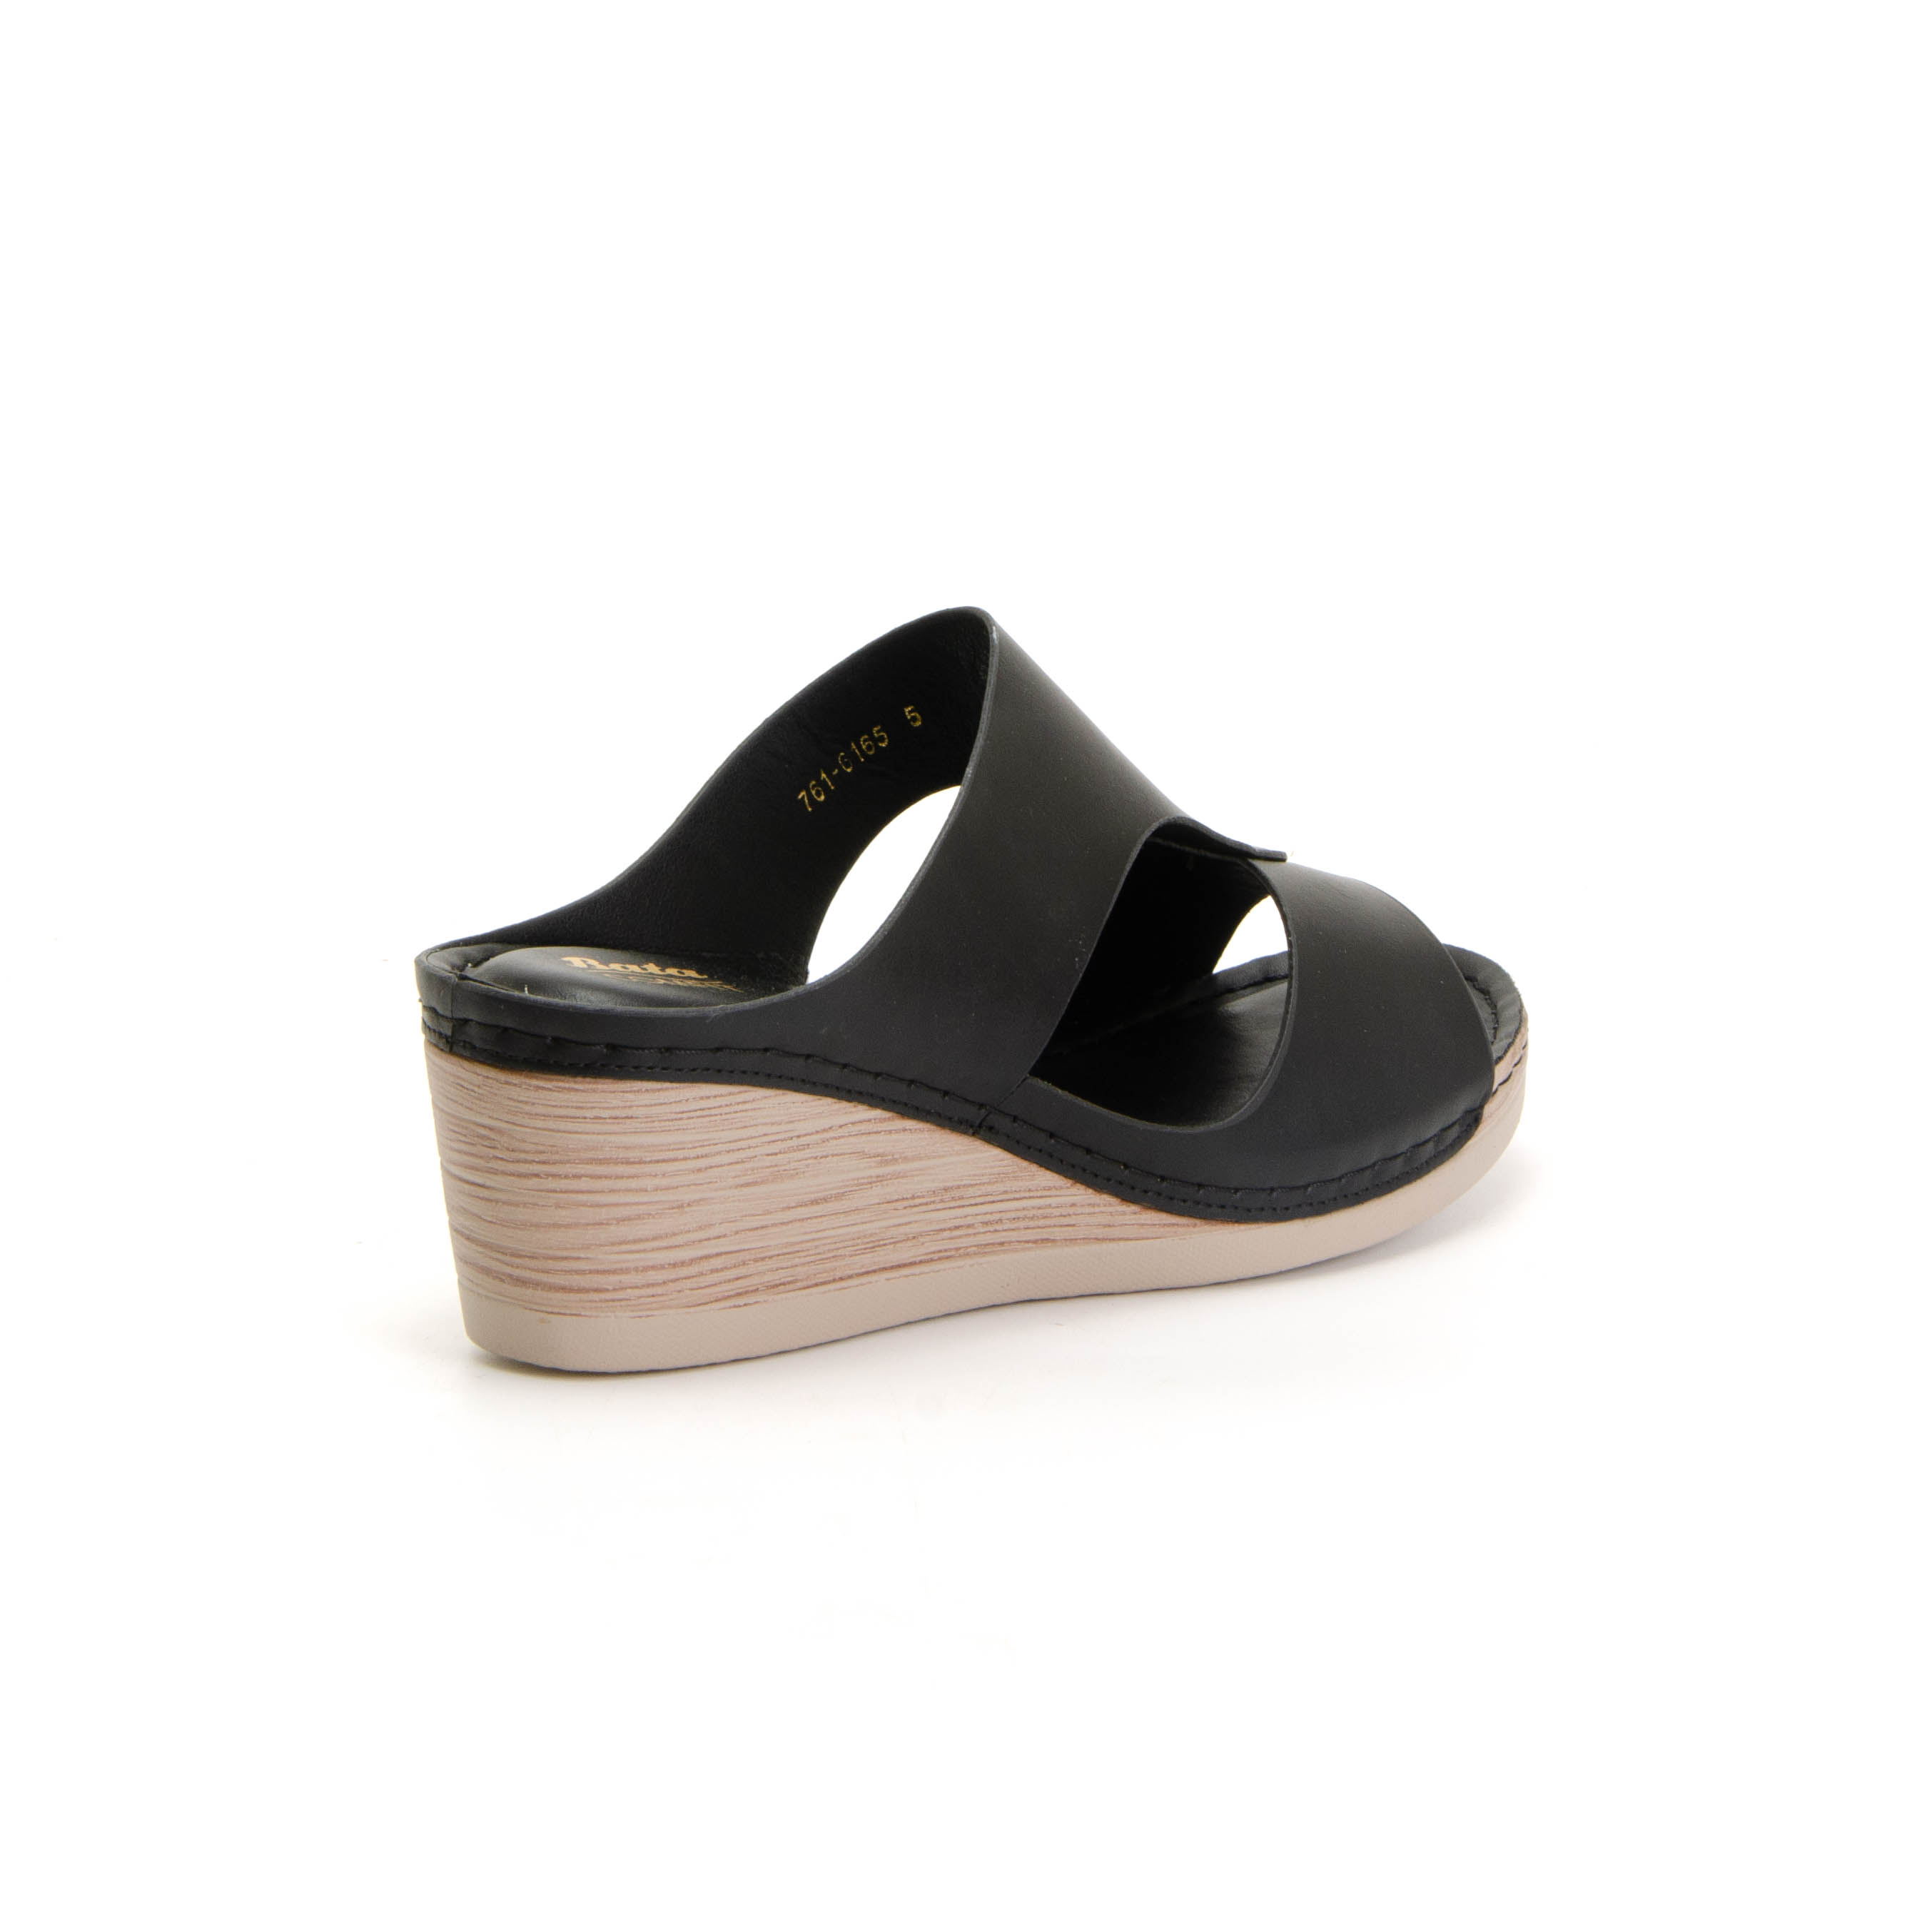 เกี่ยวกับ Bata COMFIT WEDGE รองเท้าส้นเตารีด แบบสวม เปิดส้น สีดำ รหัส 7616165 Ladiesheel Fashion